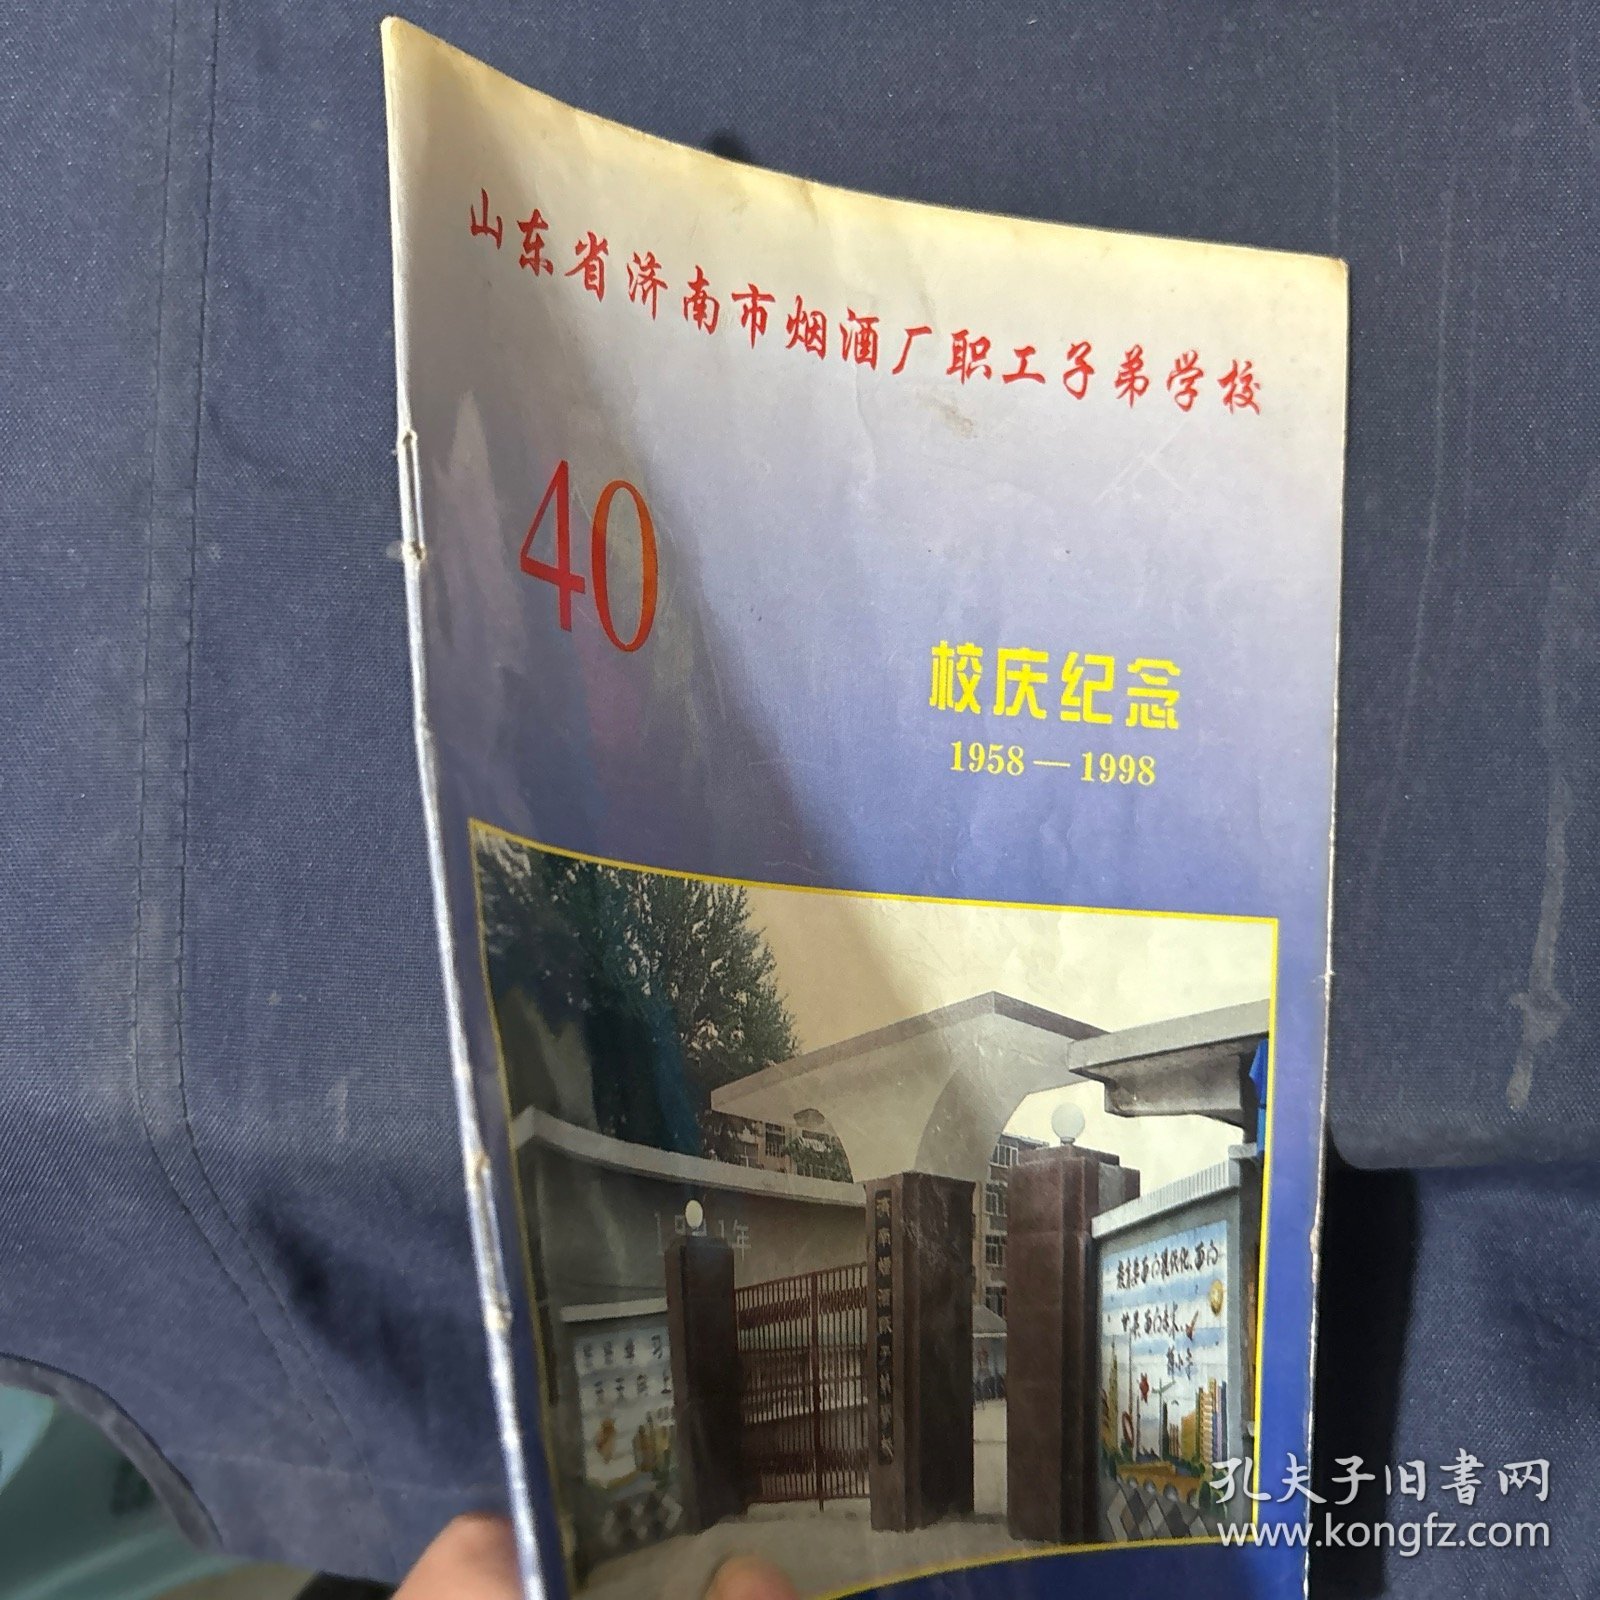 山东省济南市烟酒厂职工子弟学校 校庆纪念40 年
1958-1998 老照片纪念册资料